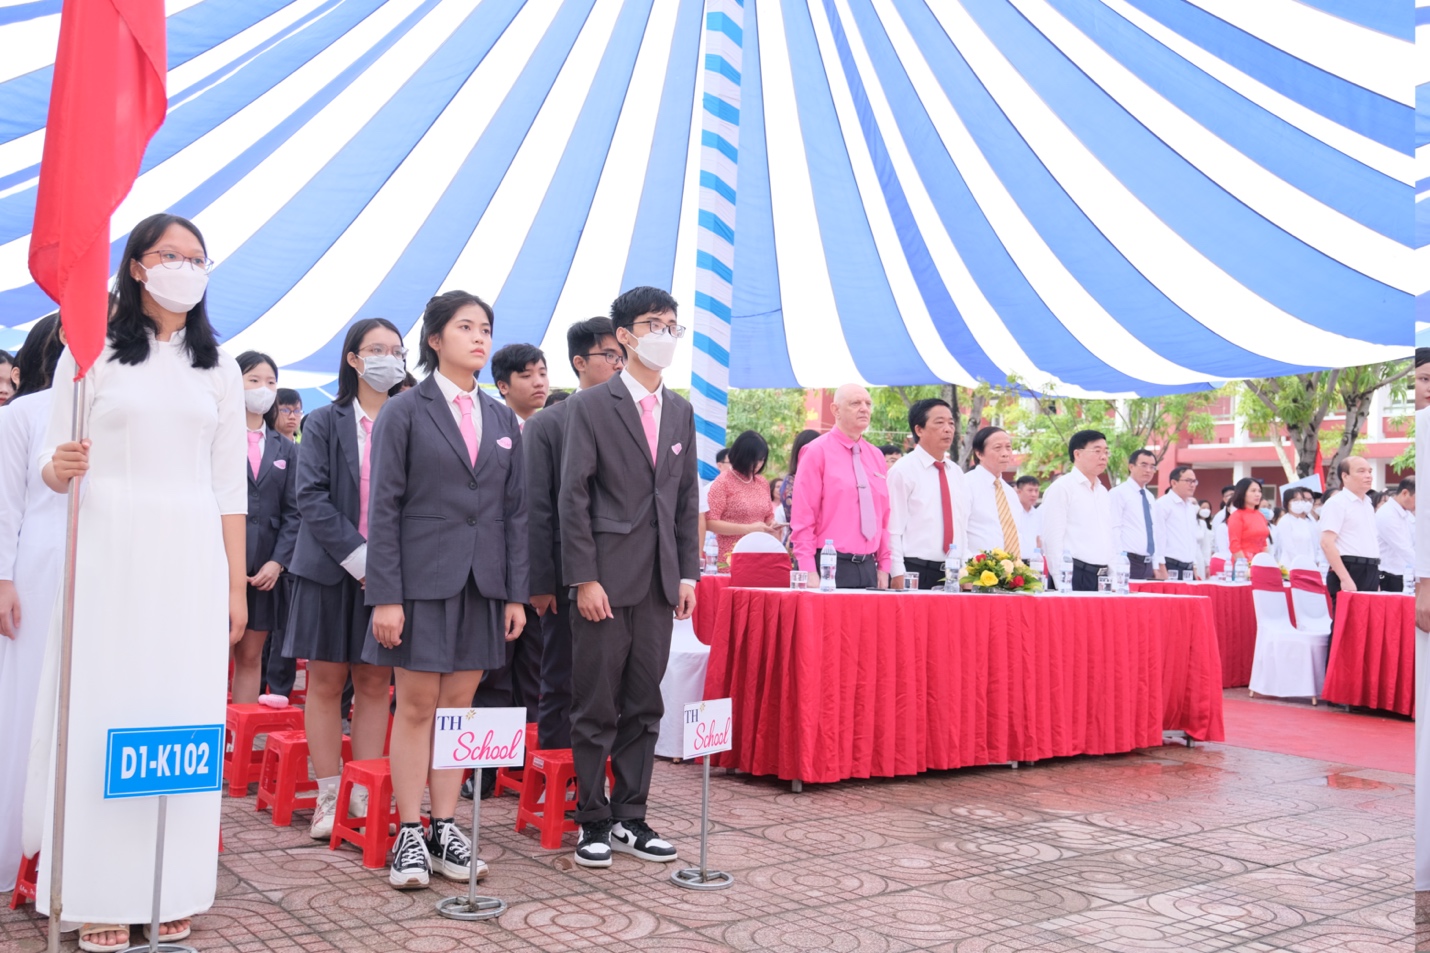 TH School khai giảng năm học mới và khánh thành cơ sở thứ 3 tại Nghệ An   - Ảnh 2.